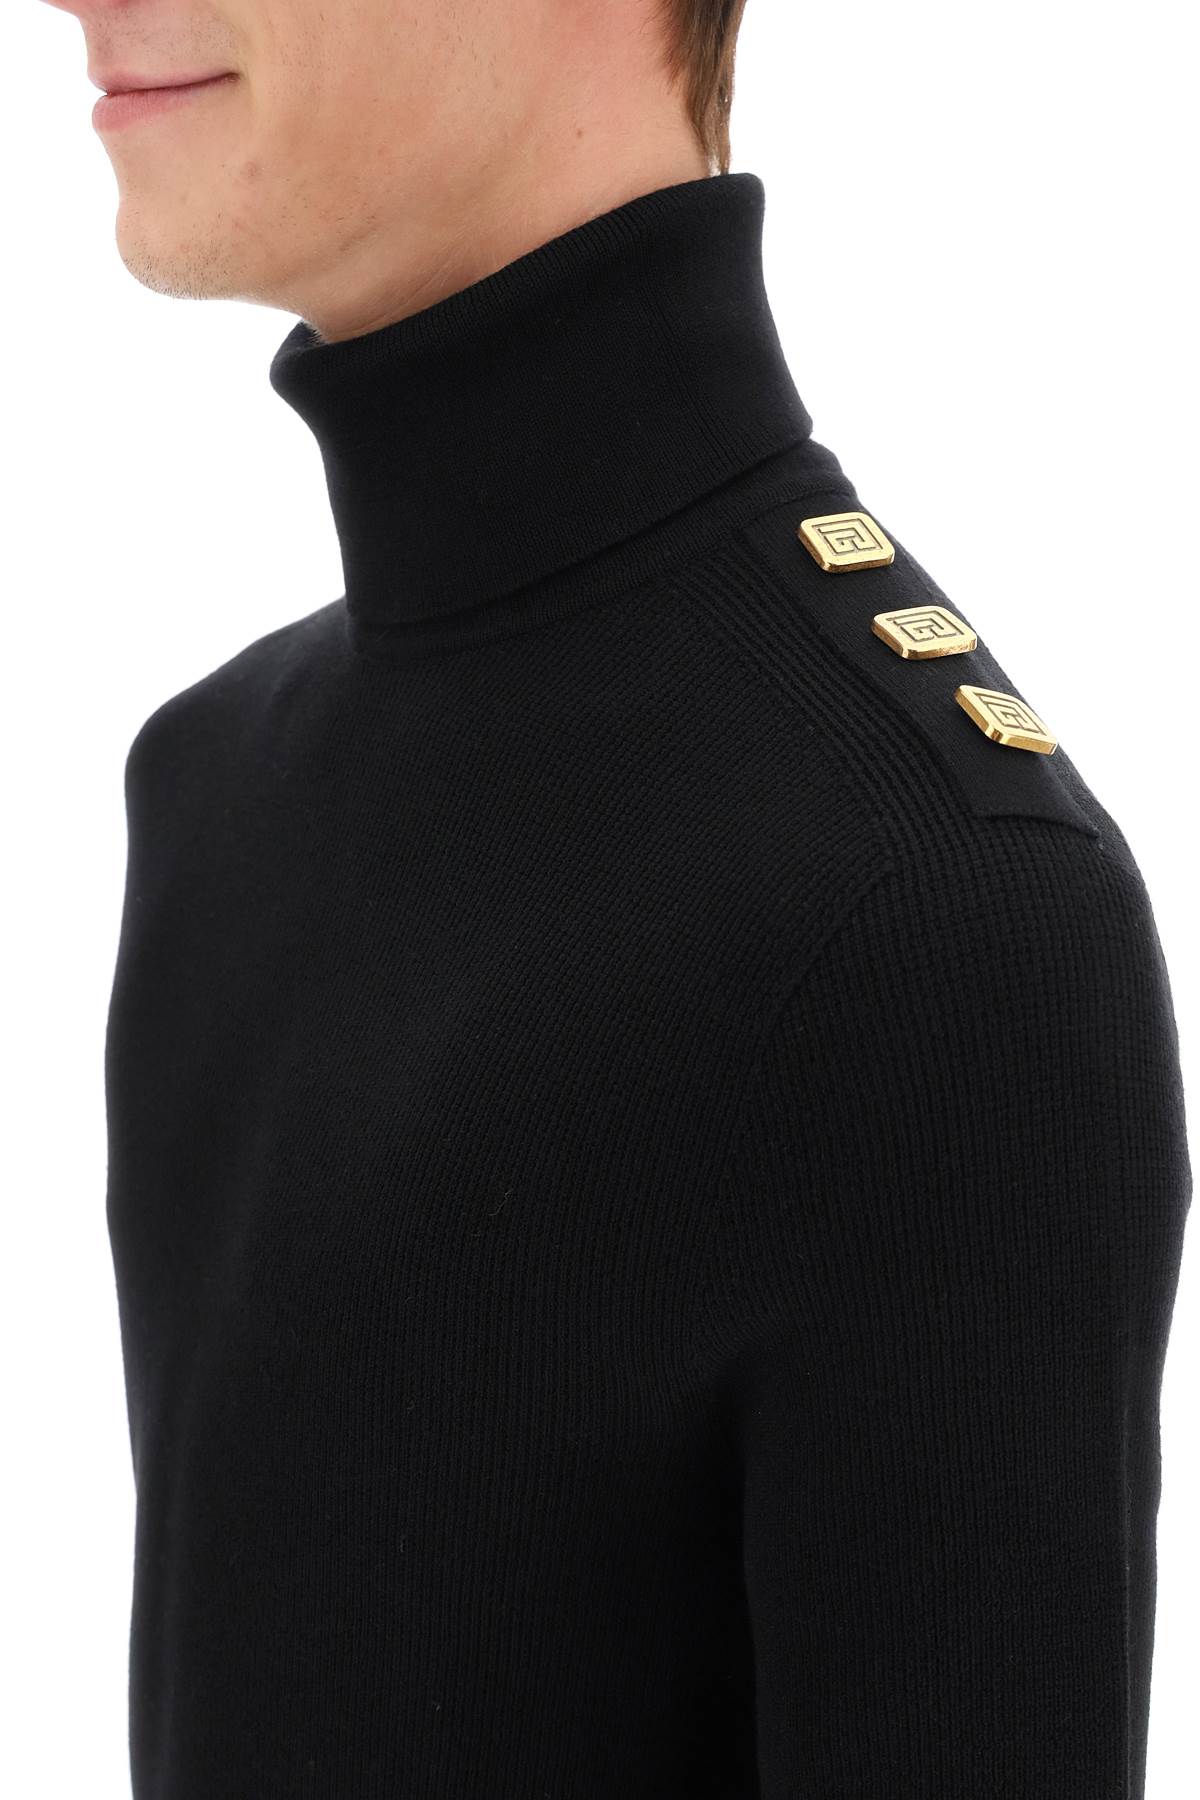 Balmain Balmain turtleneck sweater with monogram buttons